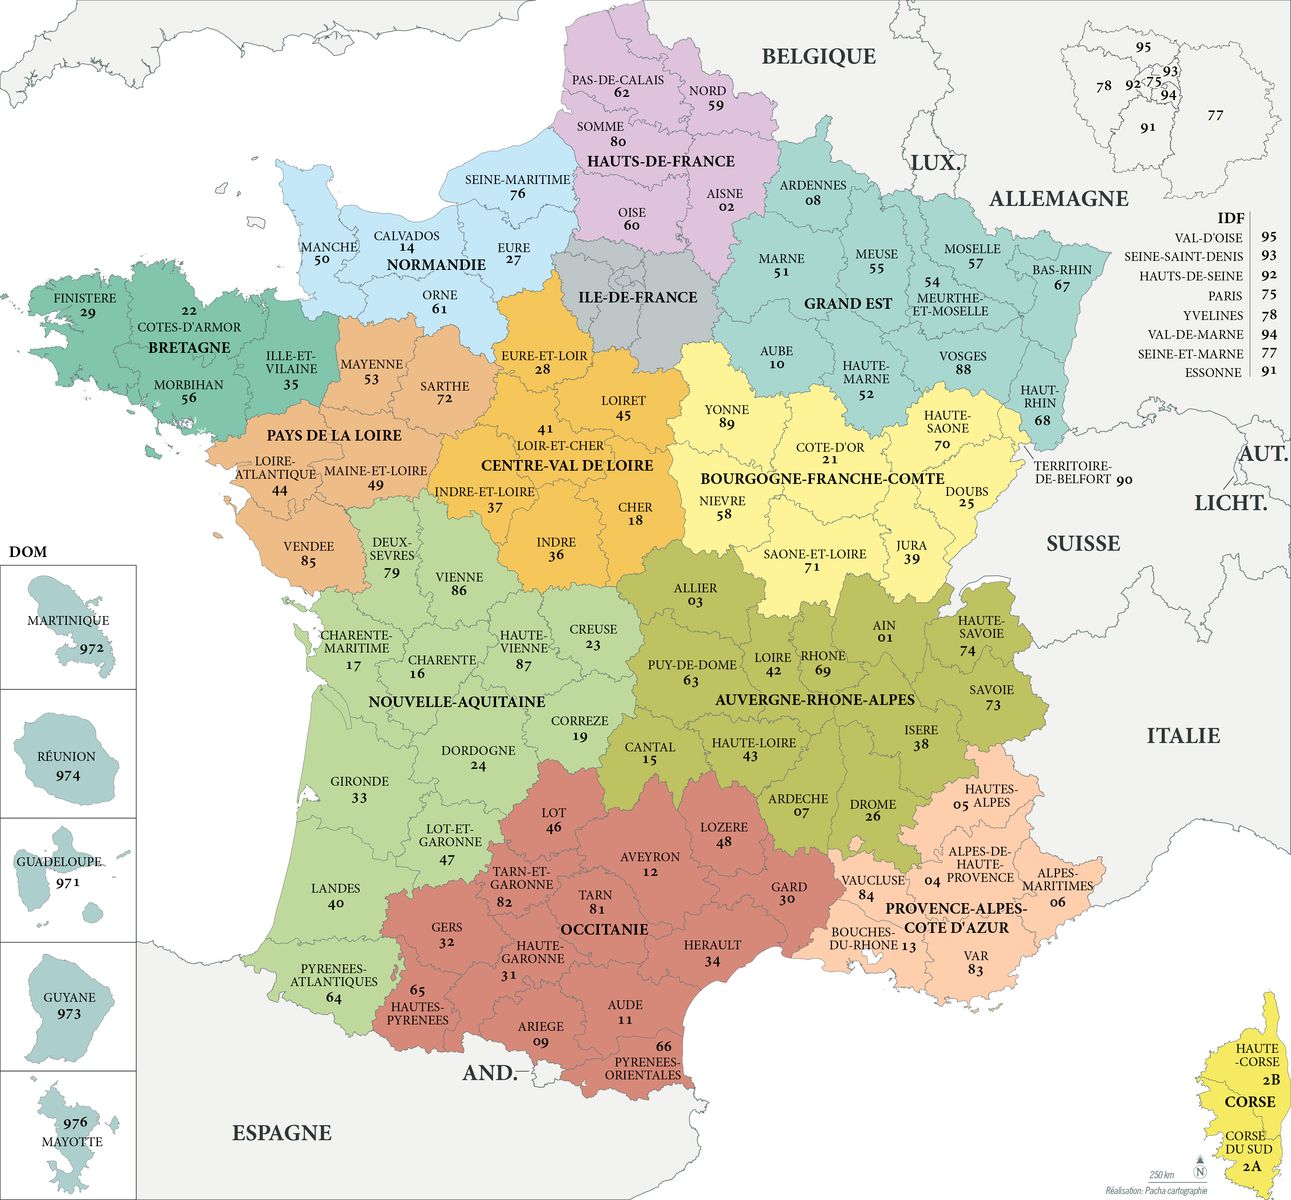 Fond de carte France - Régions et départements avec noms - Guillaume Sciaux - Cartographe professionnel